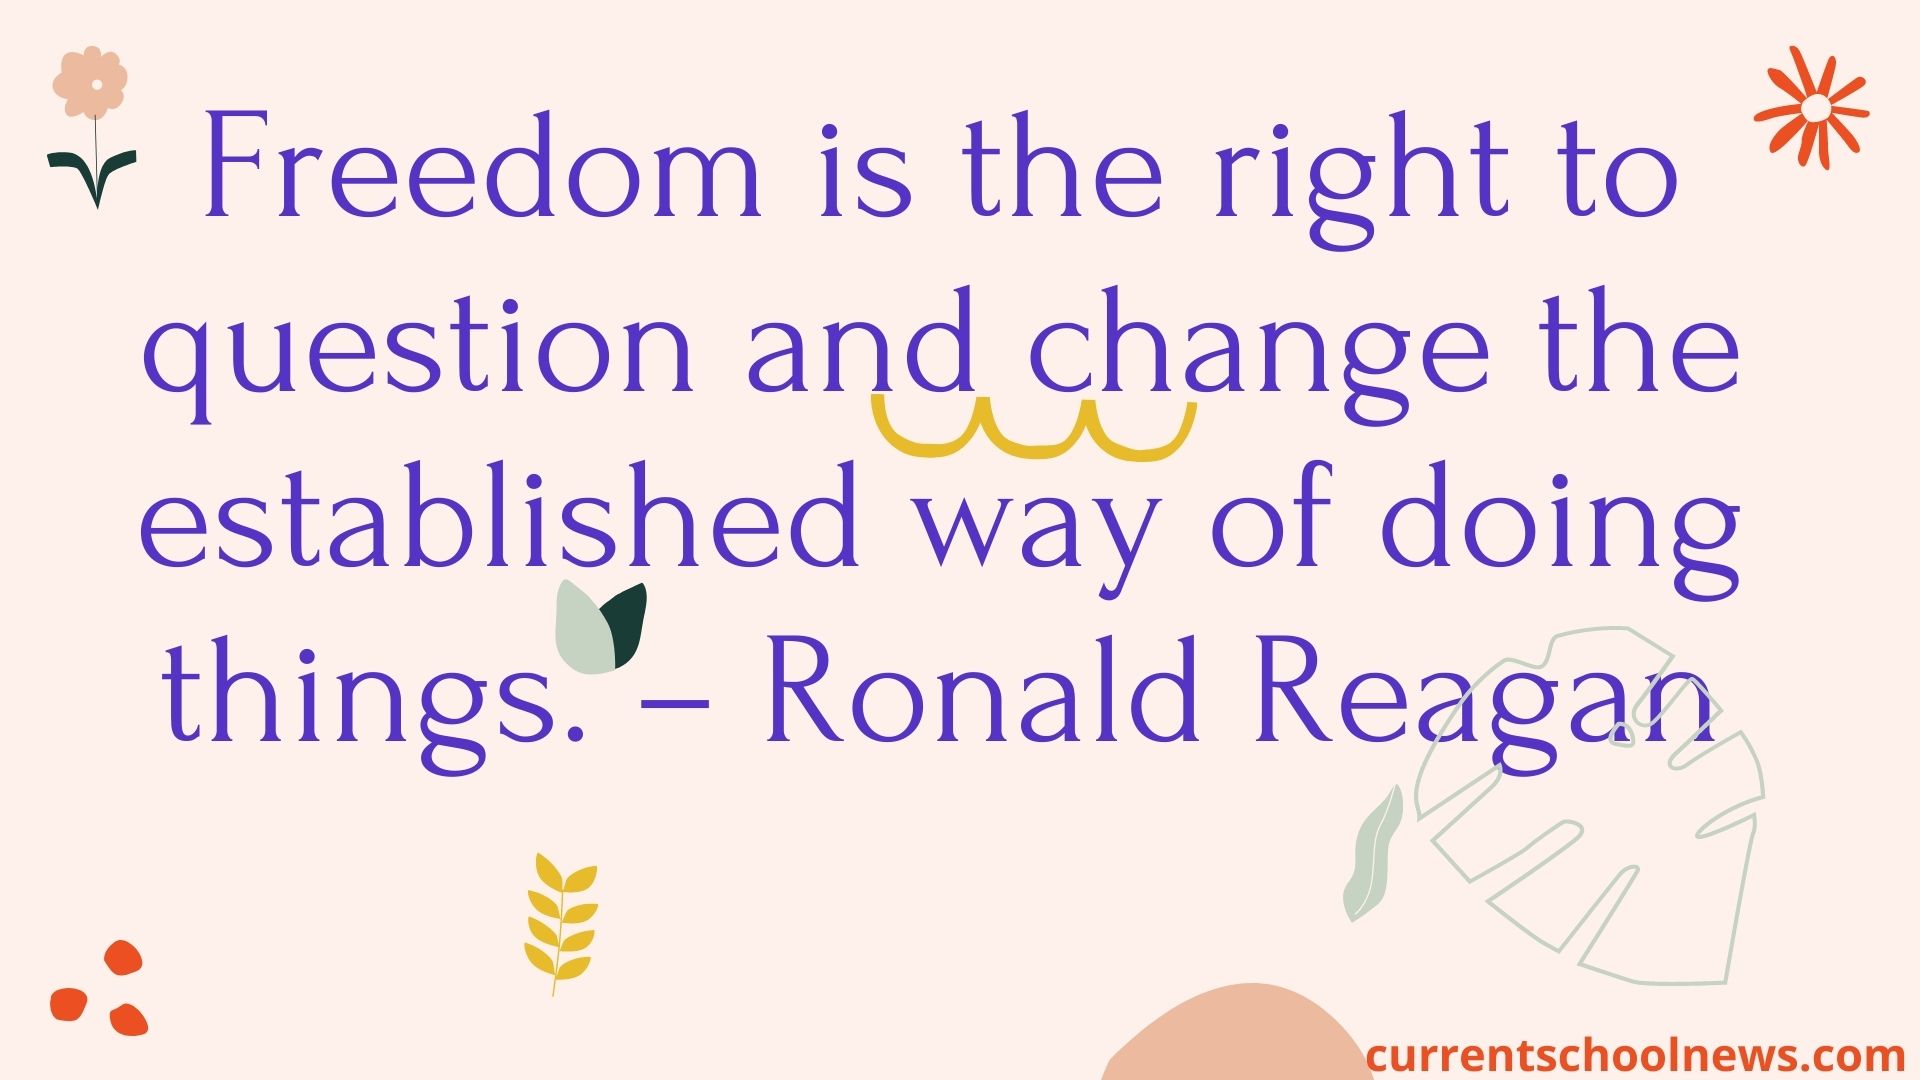 Ronald Reagan Memorial Day Speech